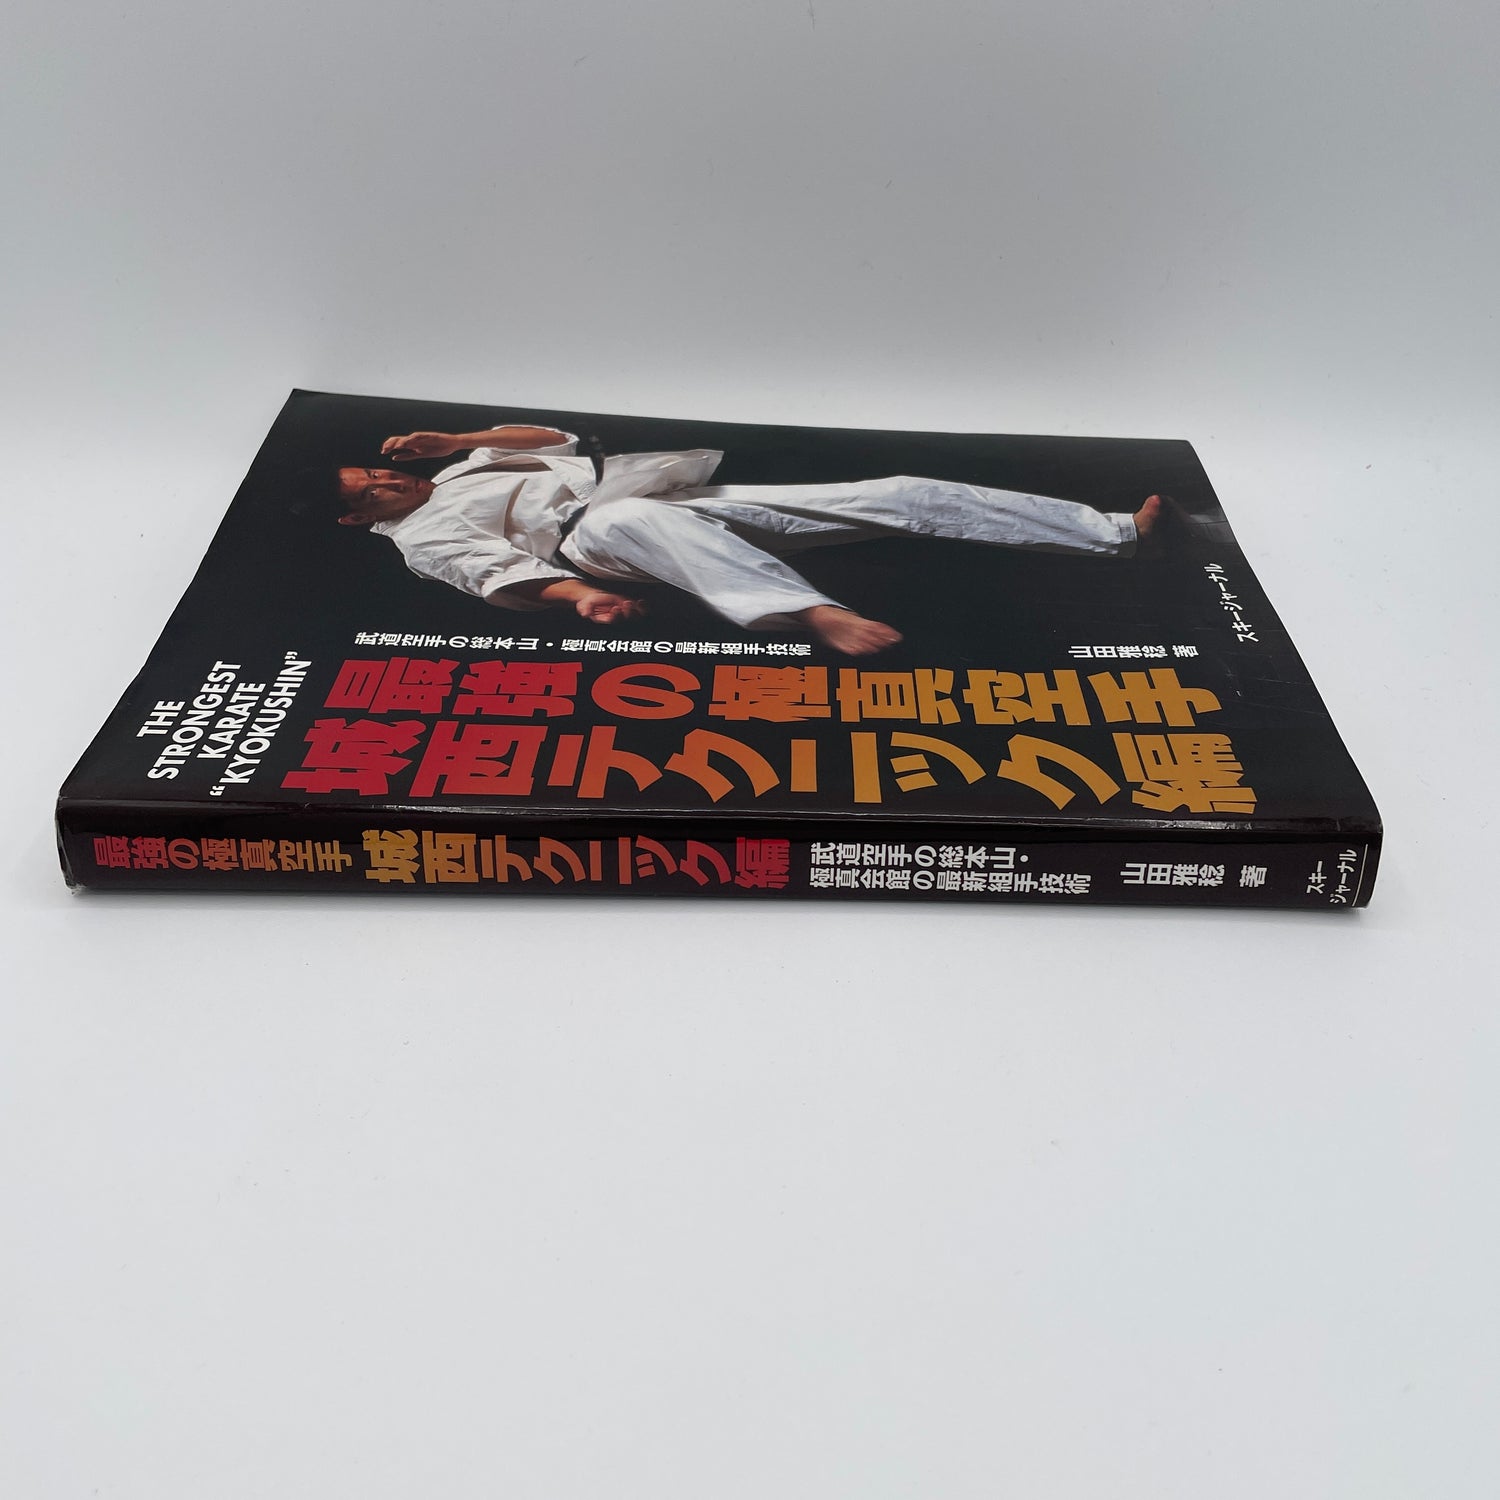 El Karate más fuerte: Libro Kyokushin de Masatoshi Yamada (usado)